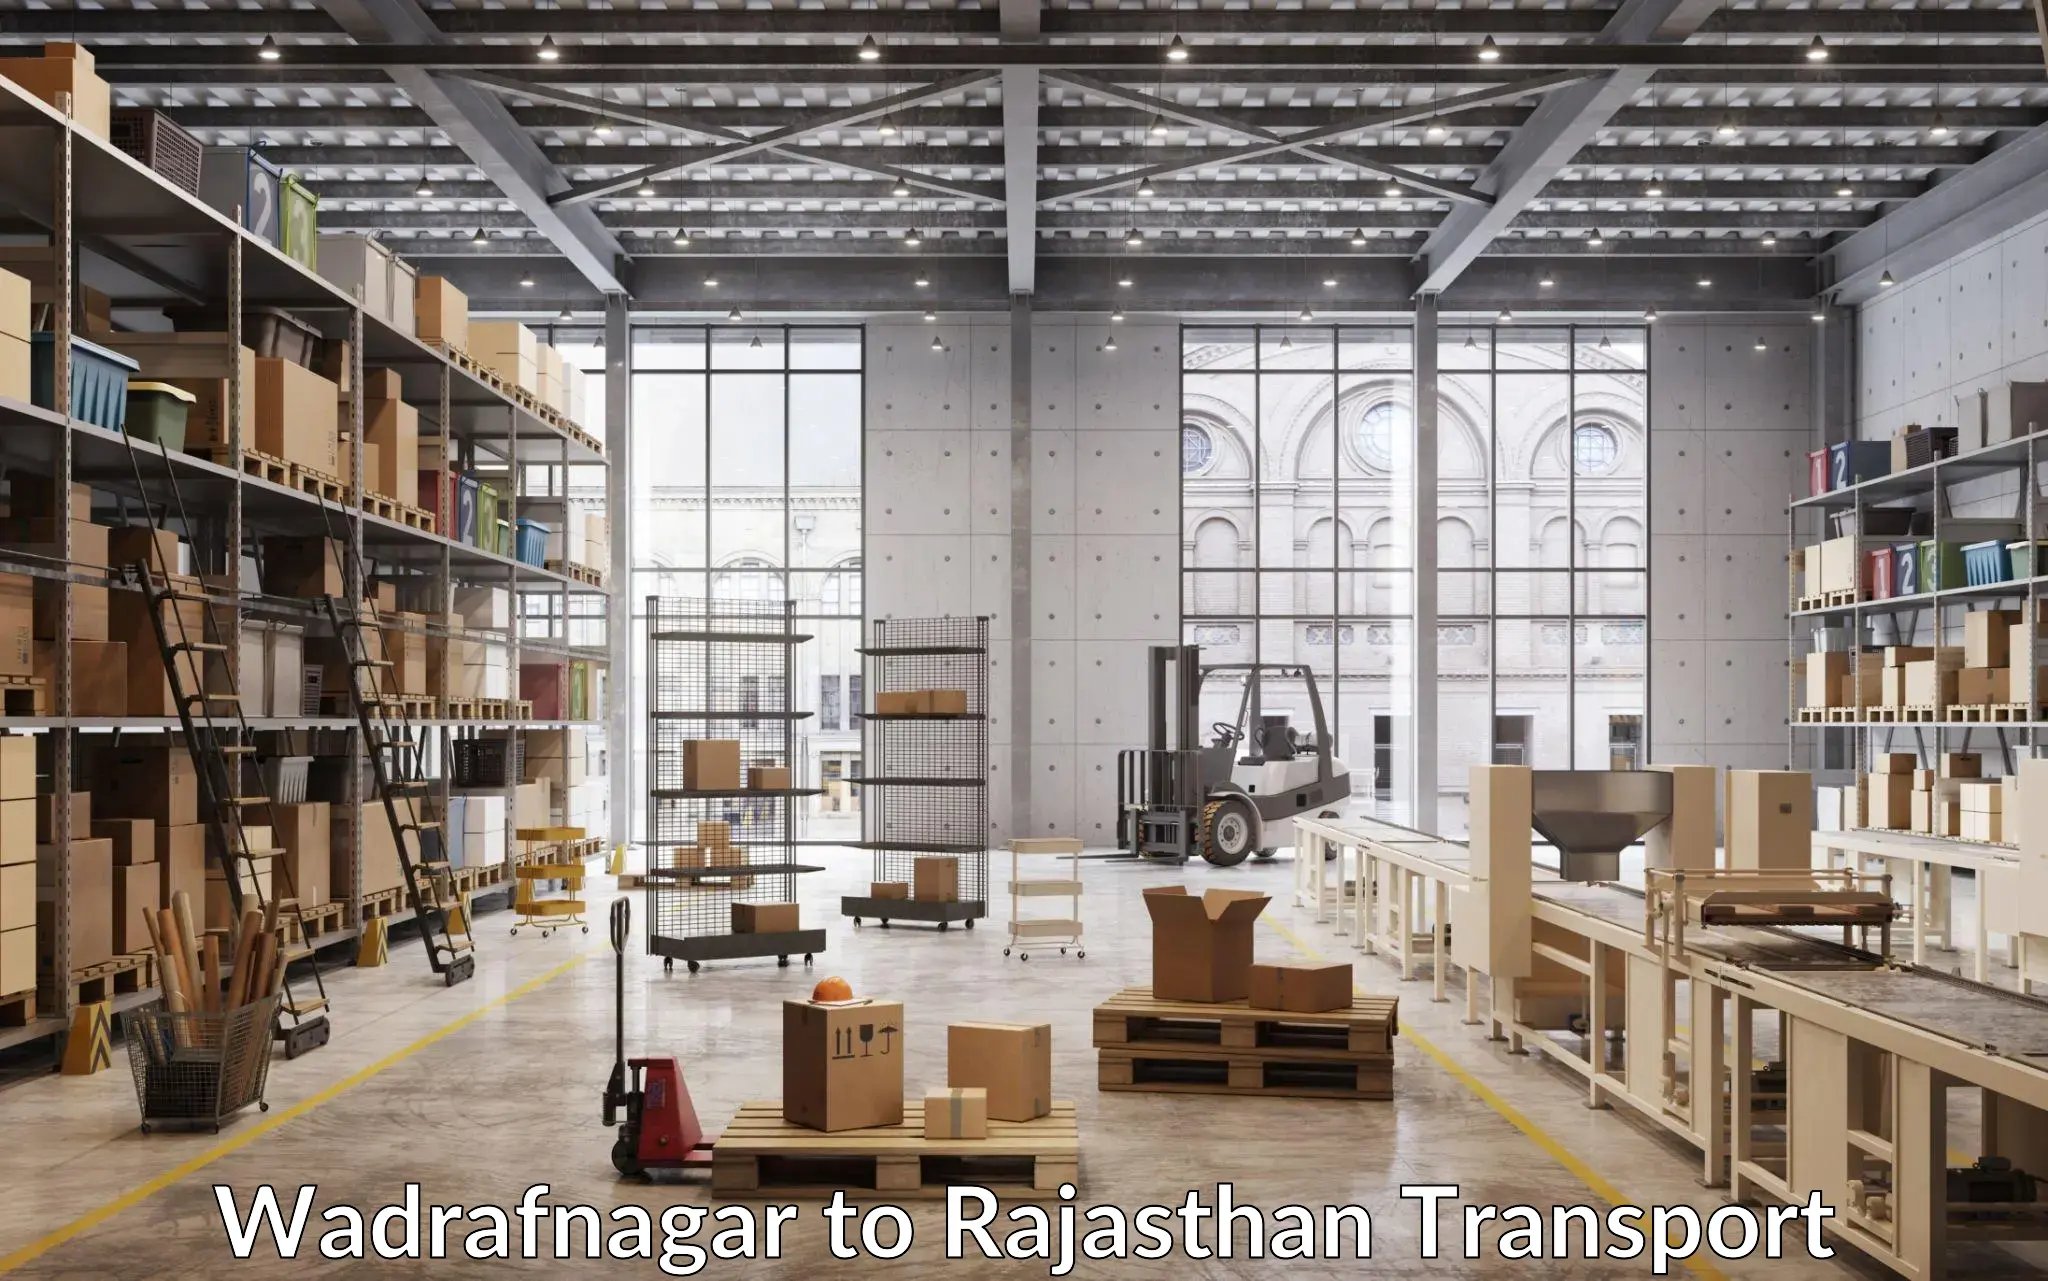 Furniture transport service Wadrafnagar to Fatehpur Sikar